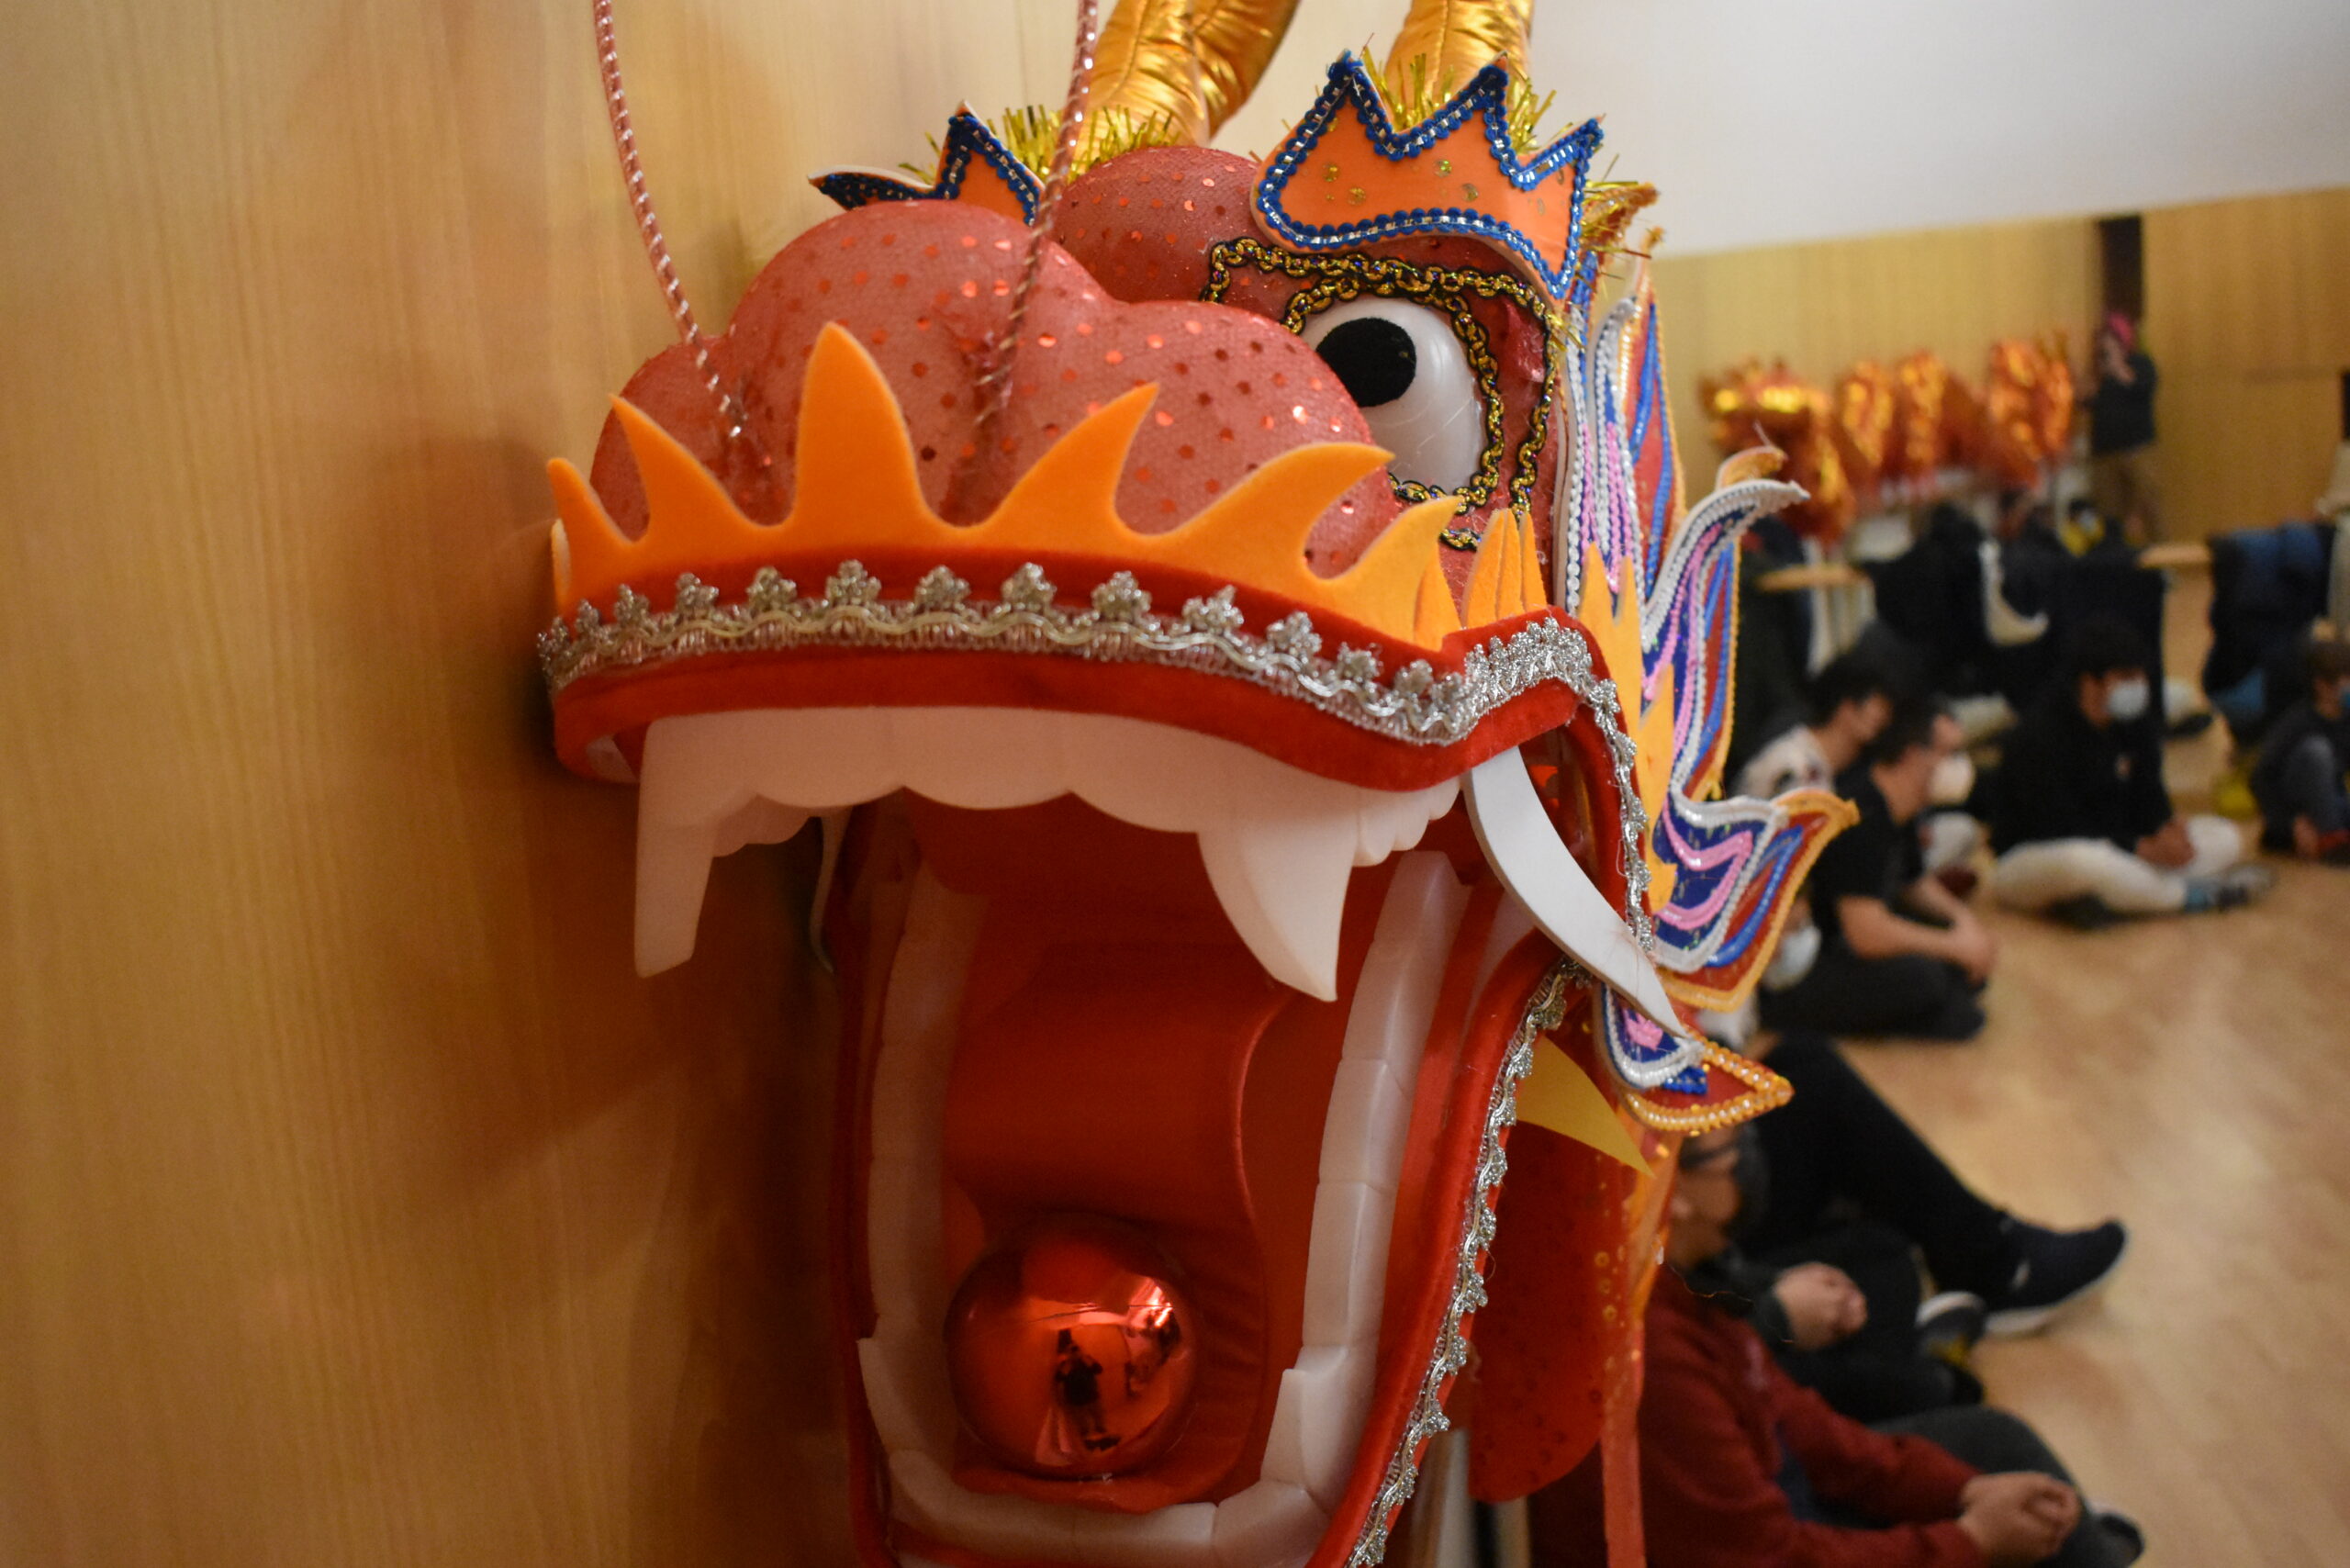 año nuevo chino:Taller de dragón chino, entrevista y kung fú